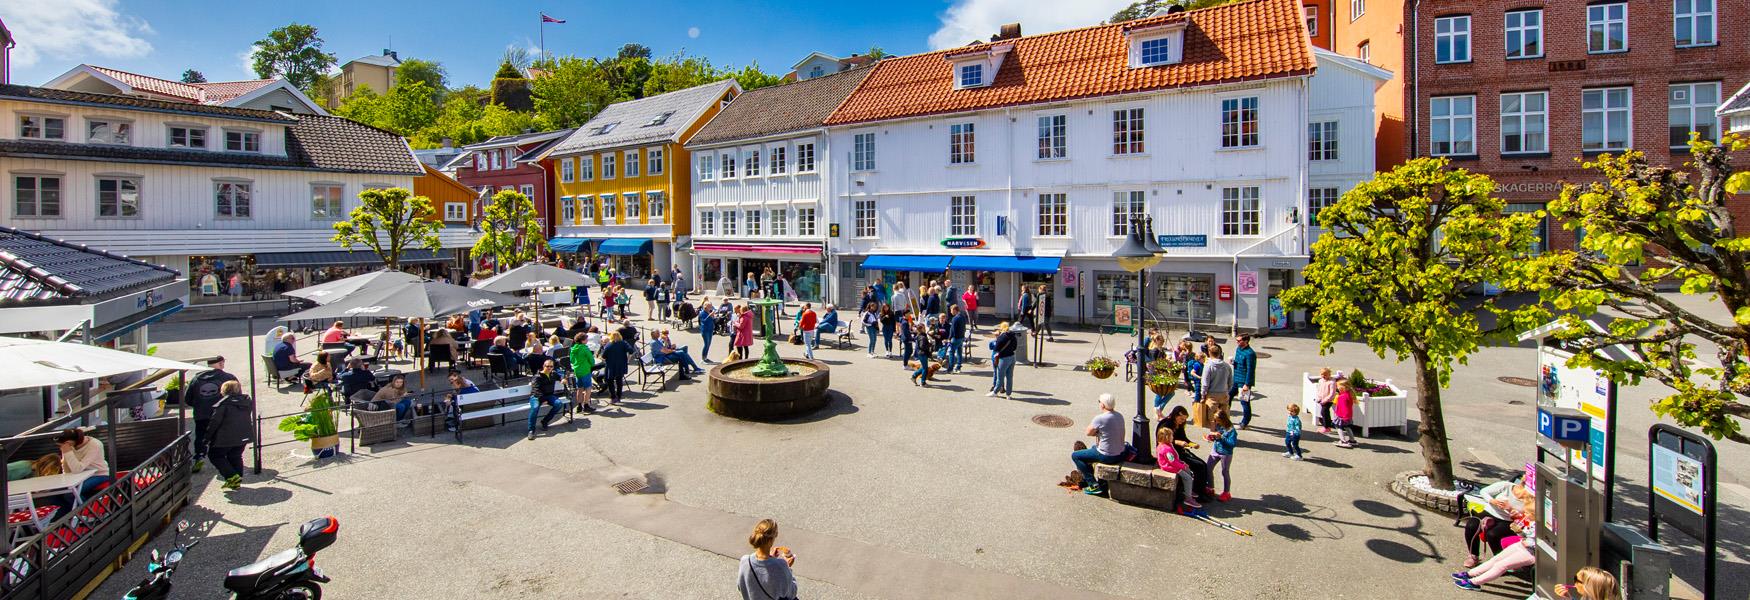 Sommerstemning på Torvet i Kragerø sentrum